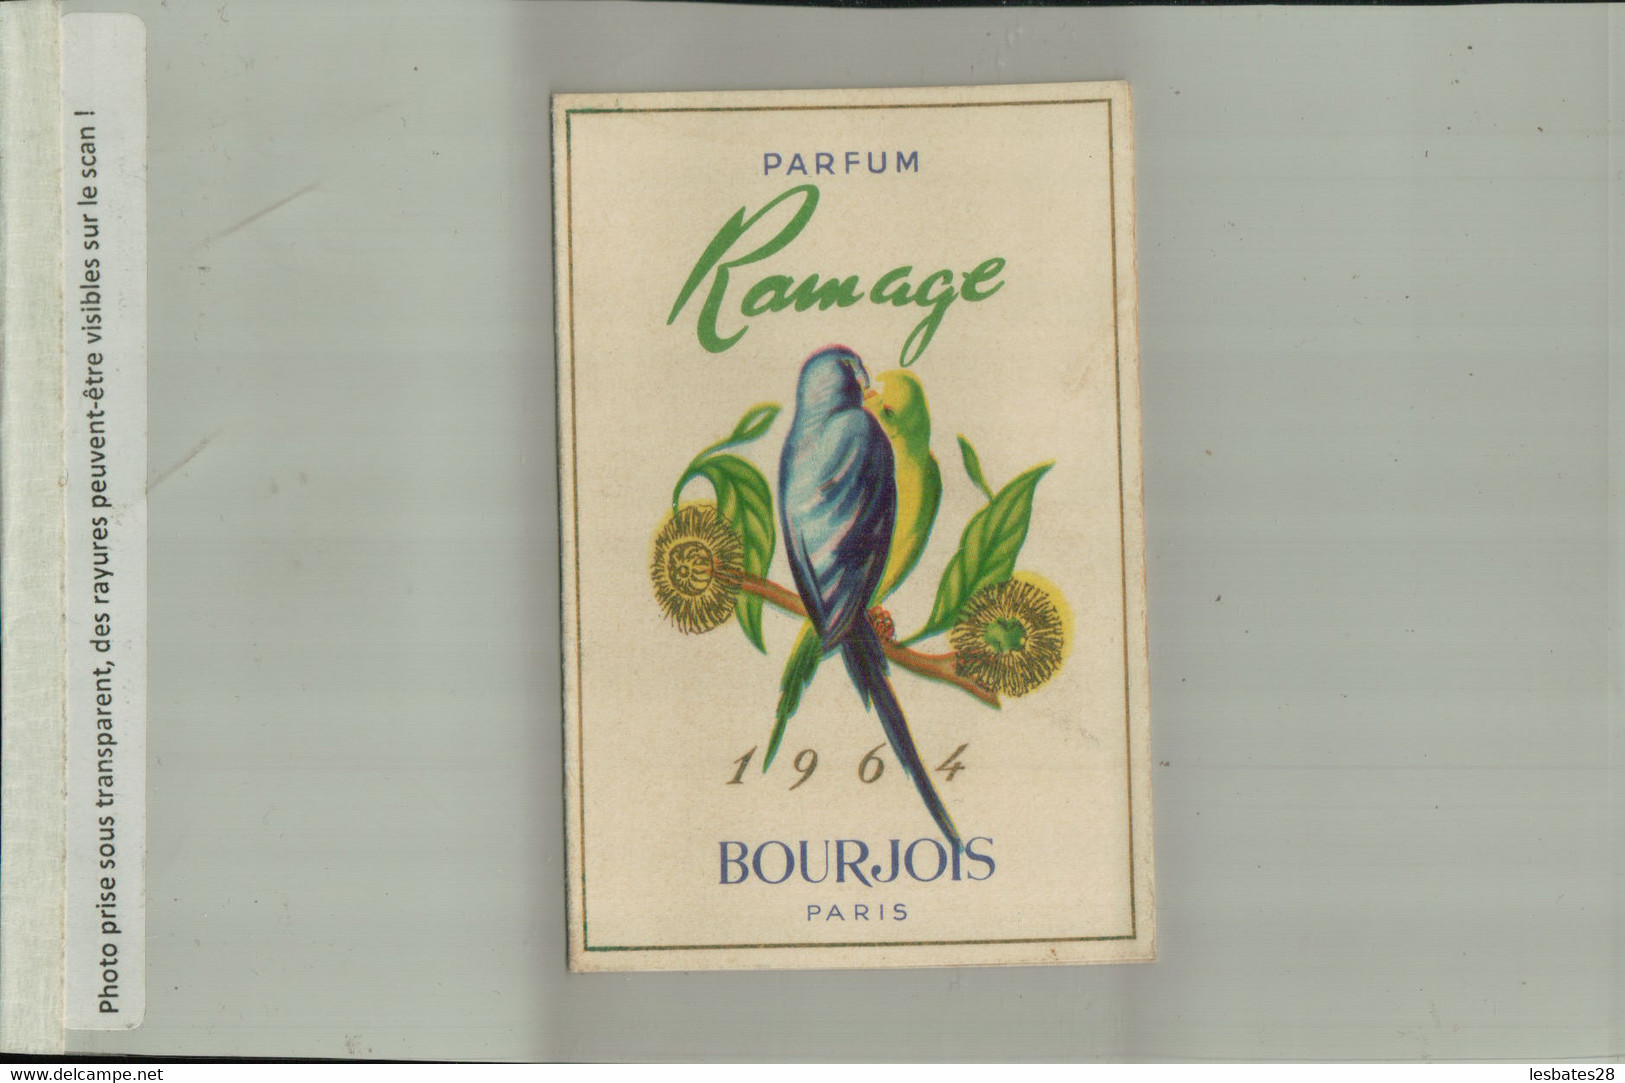 PARFUM RAMAGE BOURJOIS PARIS CALENDRIER 1964 Publicité  Parfumerie Coifure  MONTSAUCHE   (AVRI 2021 ABL 074) - Klein Formaat: 1961-70